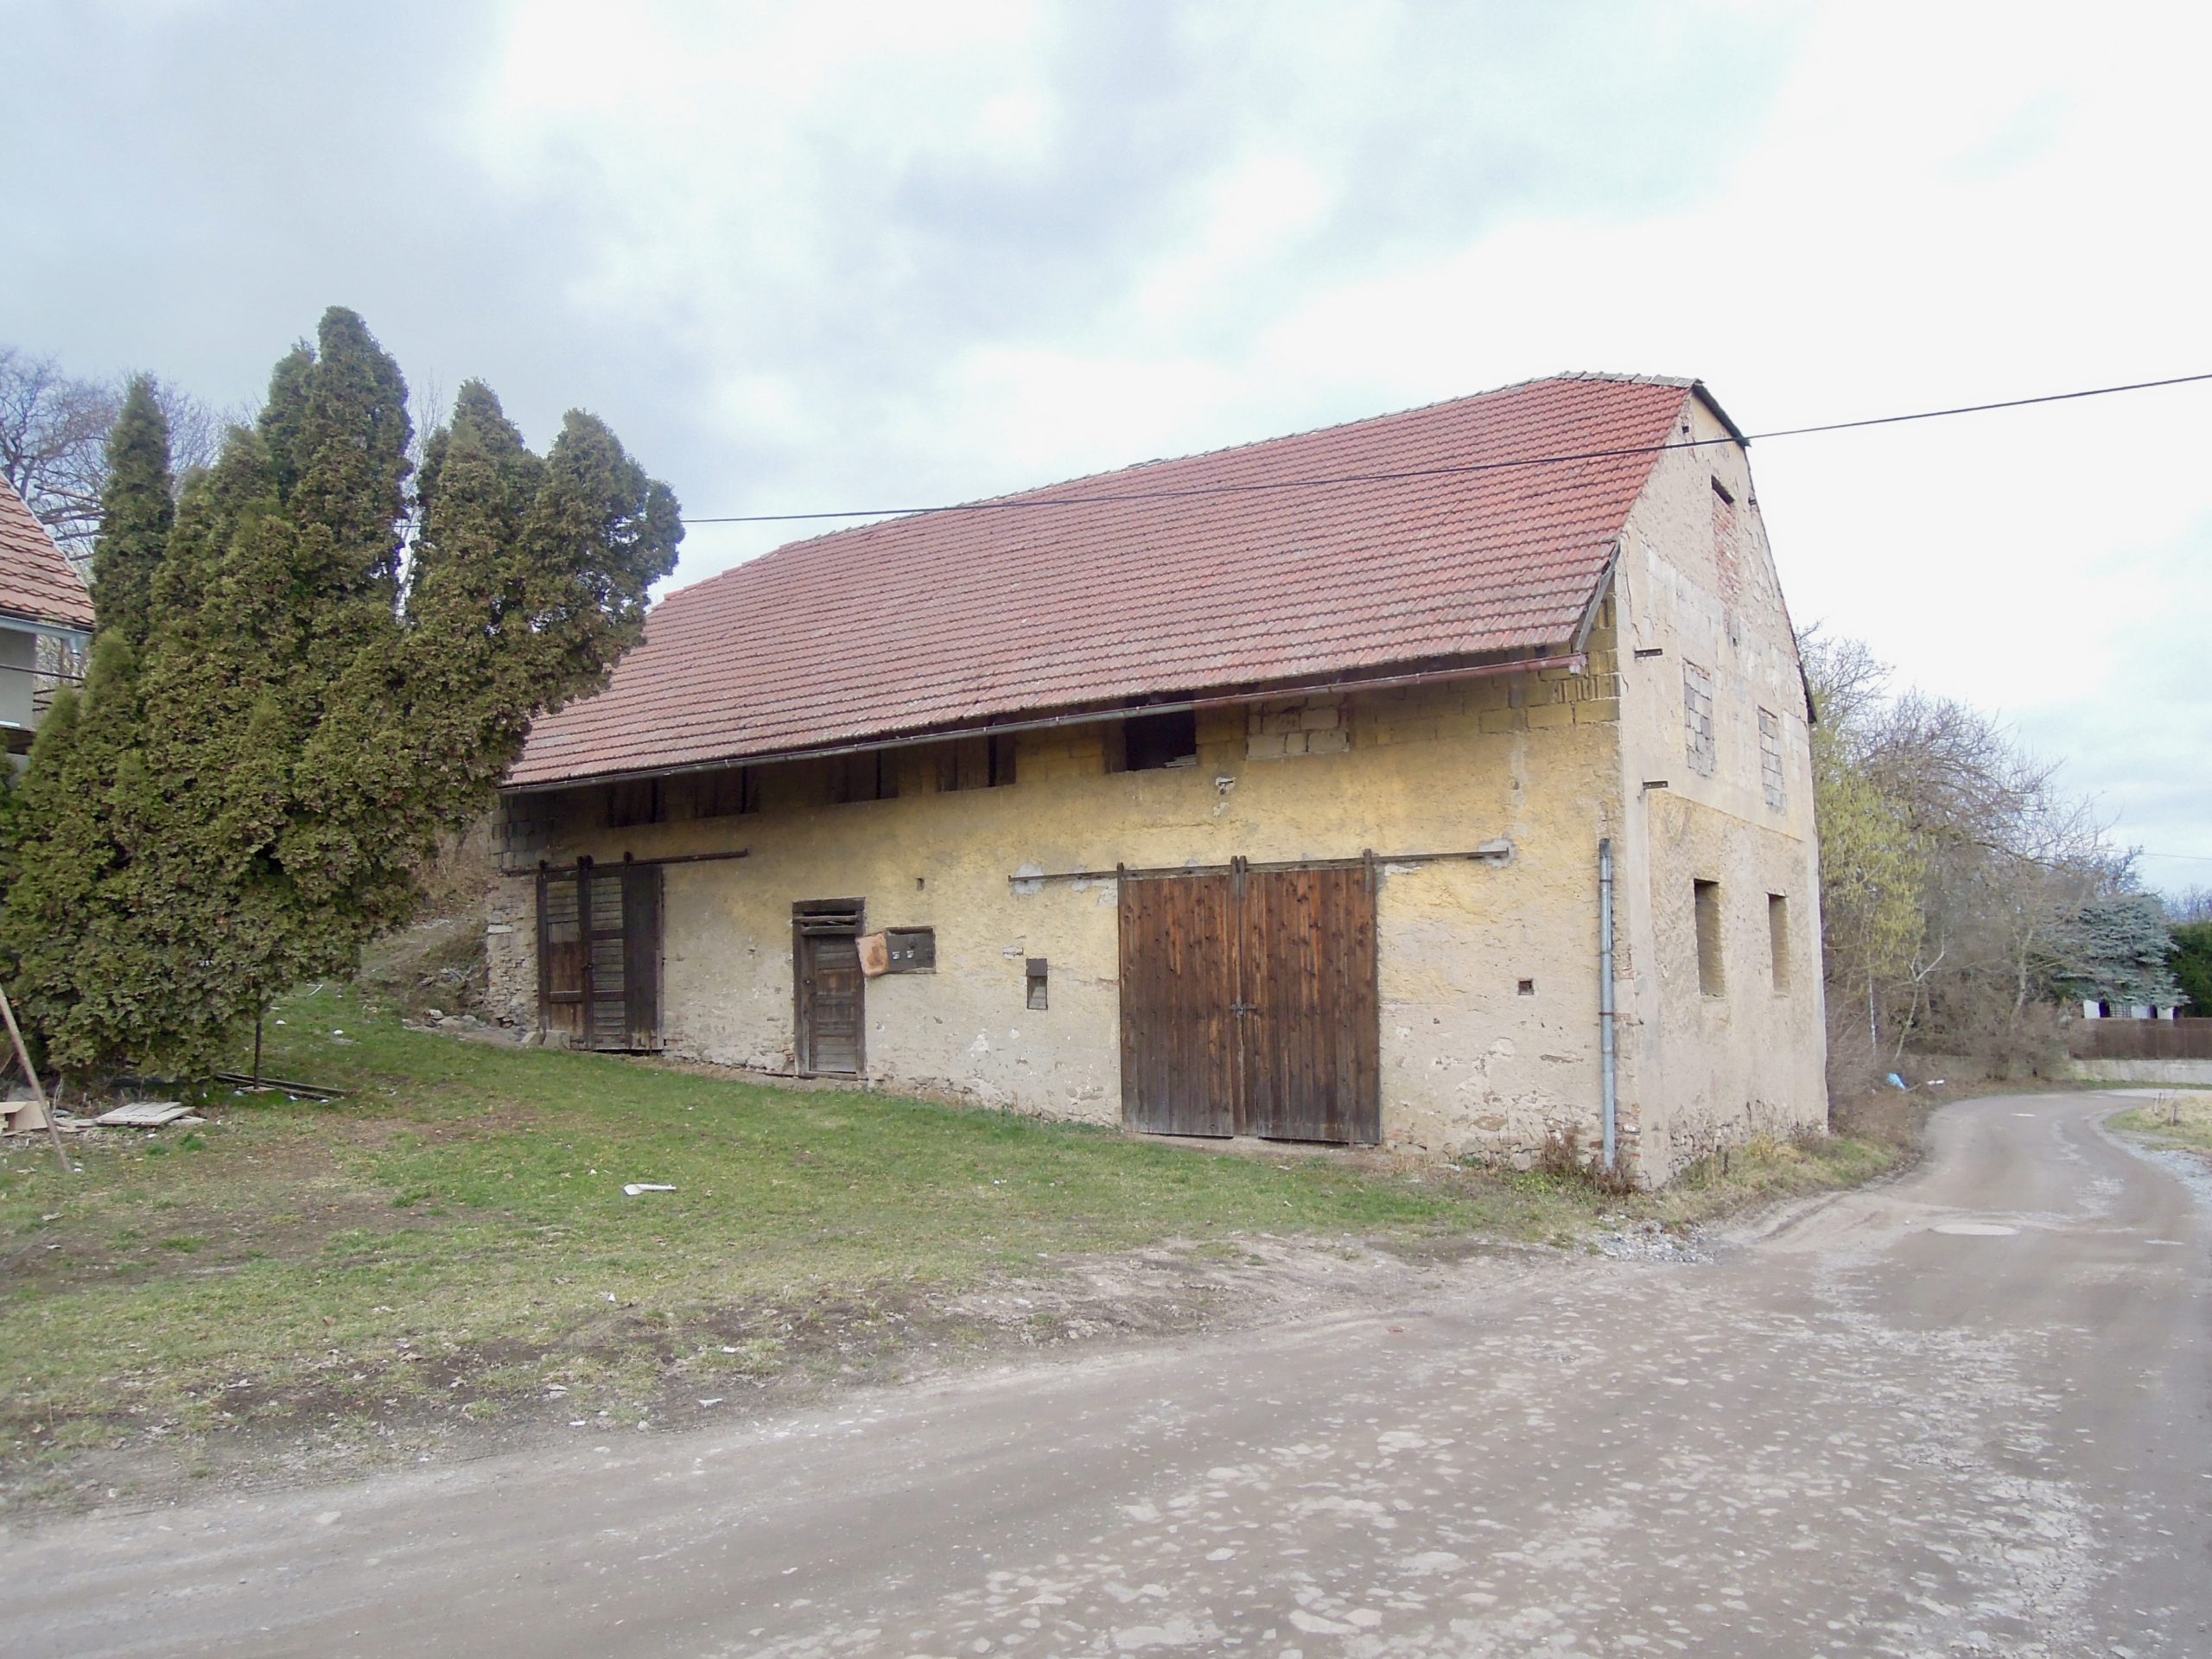 Hospodářská budova – stodola, poz. 7400m2, Cerhenice – Cerhýnky